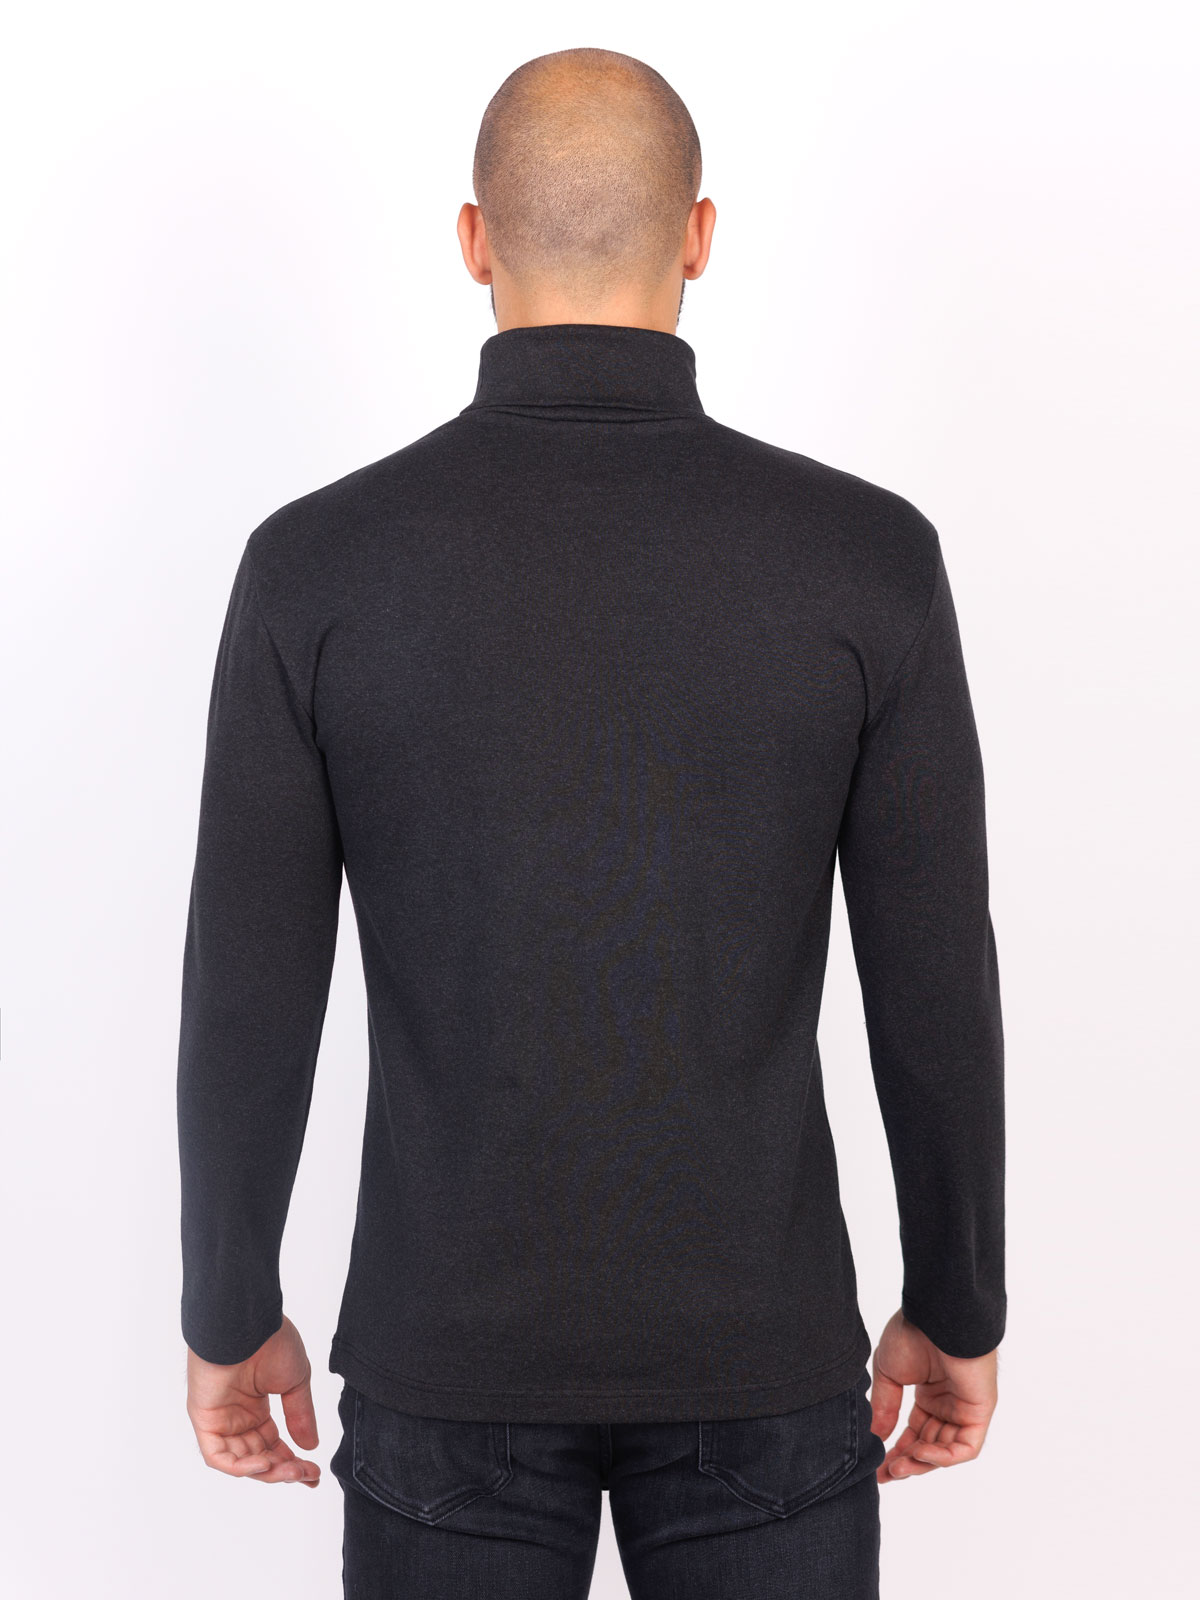 Σκούρο γκρι βαμβακερό μπλουζάκι πόλο - 42363 € 27.56 img2